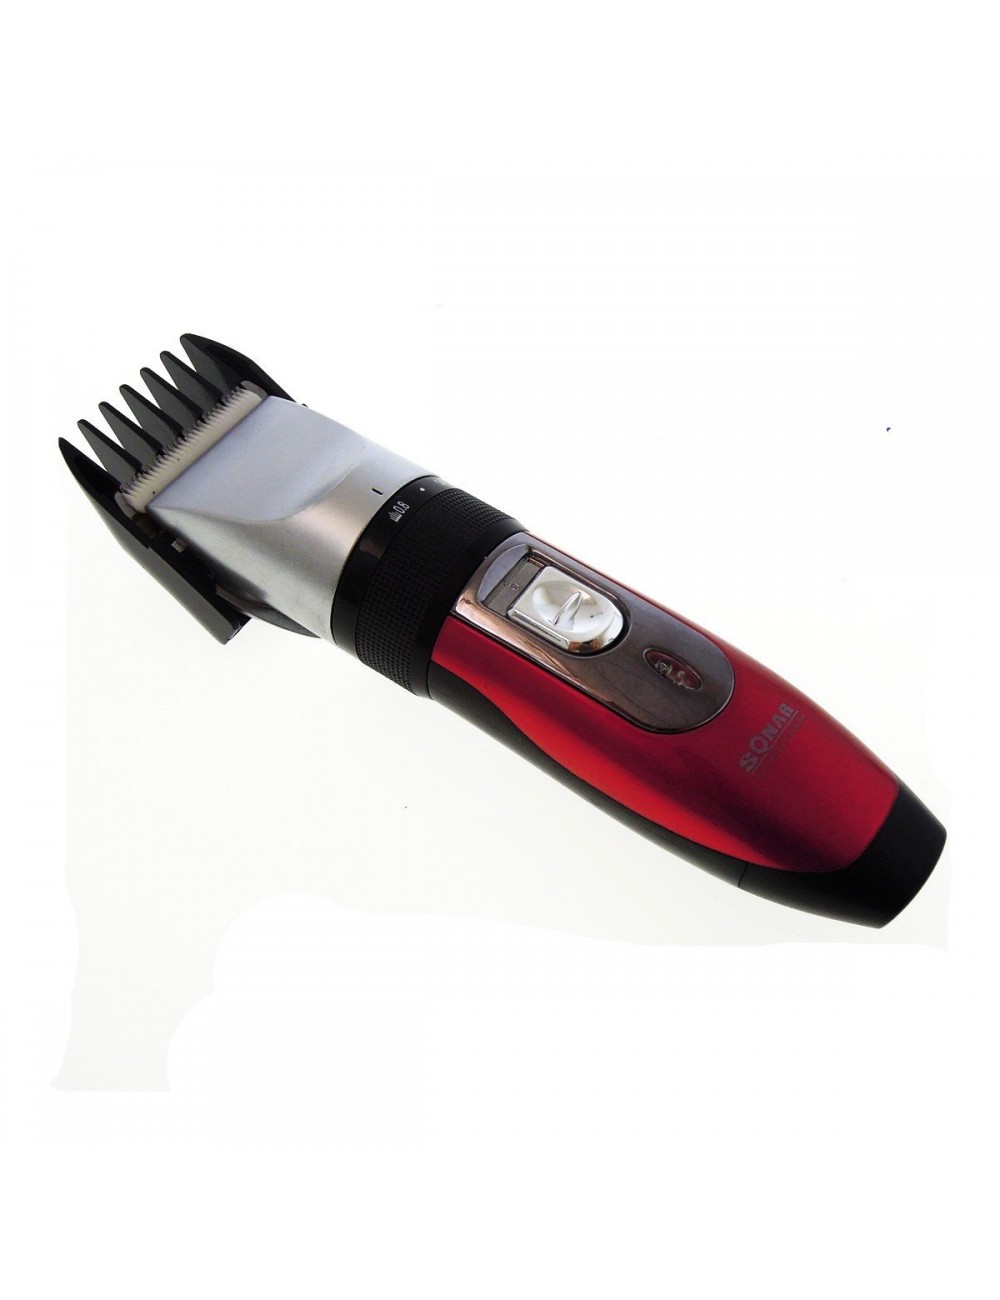 Taglia capelli rasoio regola barba elettrico Sonar SN-508 ricaricabile